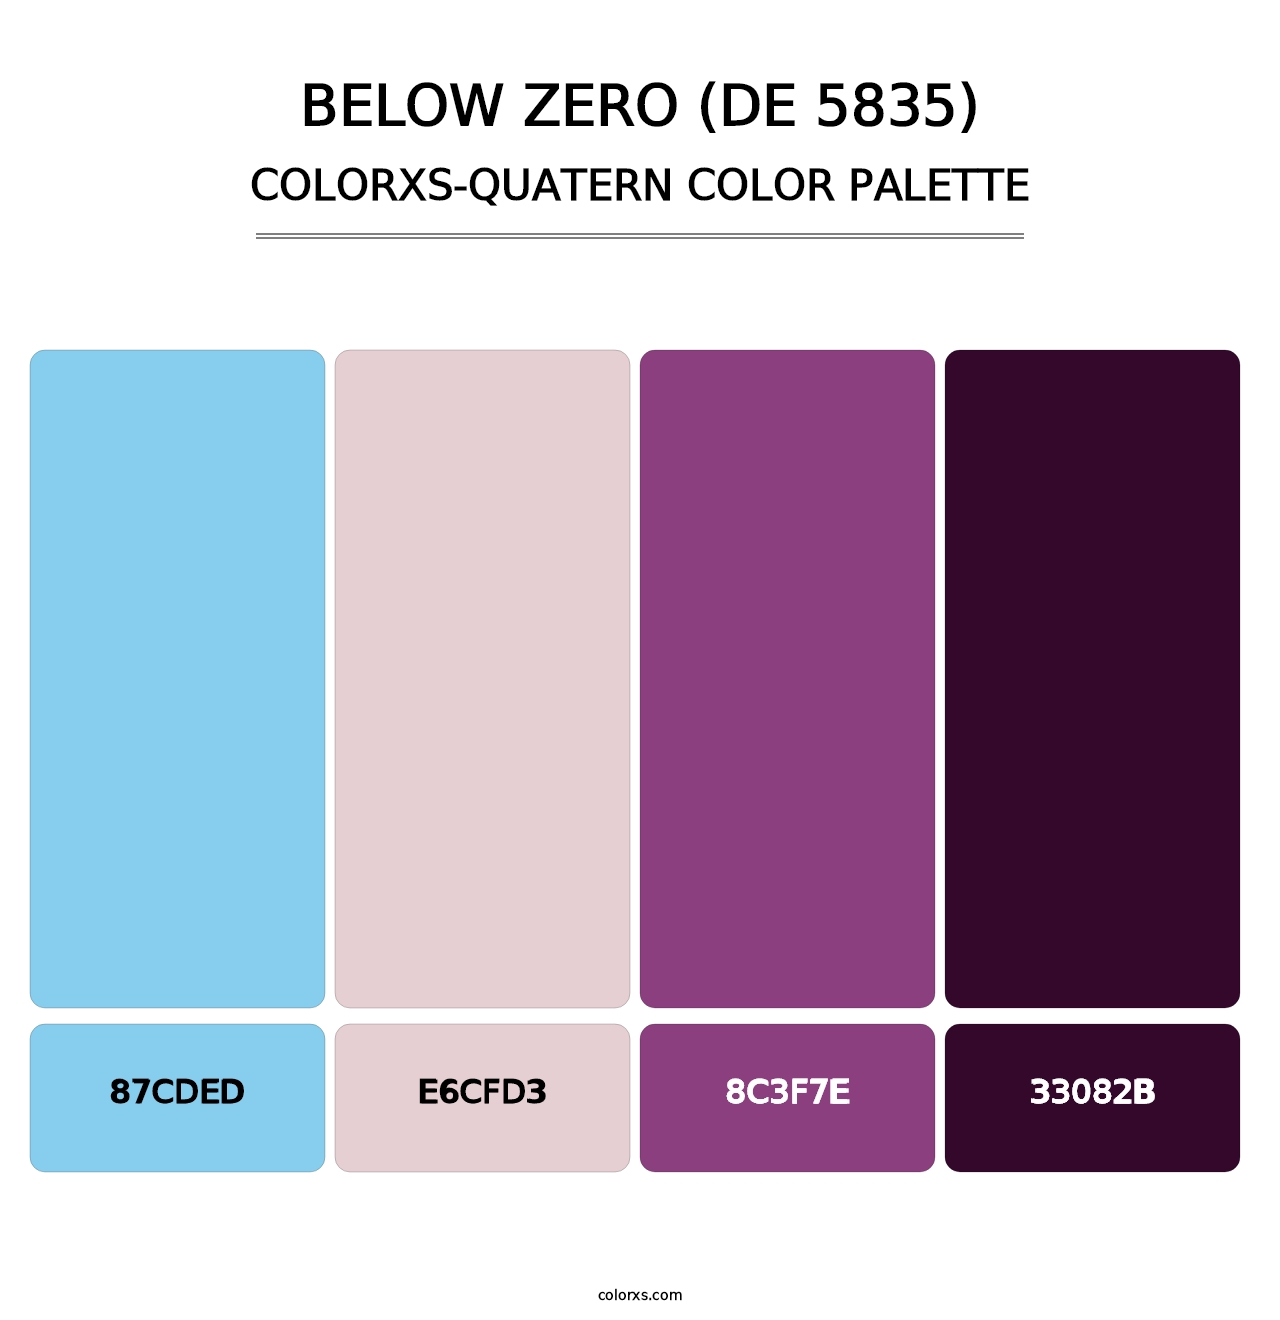 Below Zero (DE 5835) - Colorxs Quatern Palette